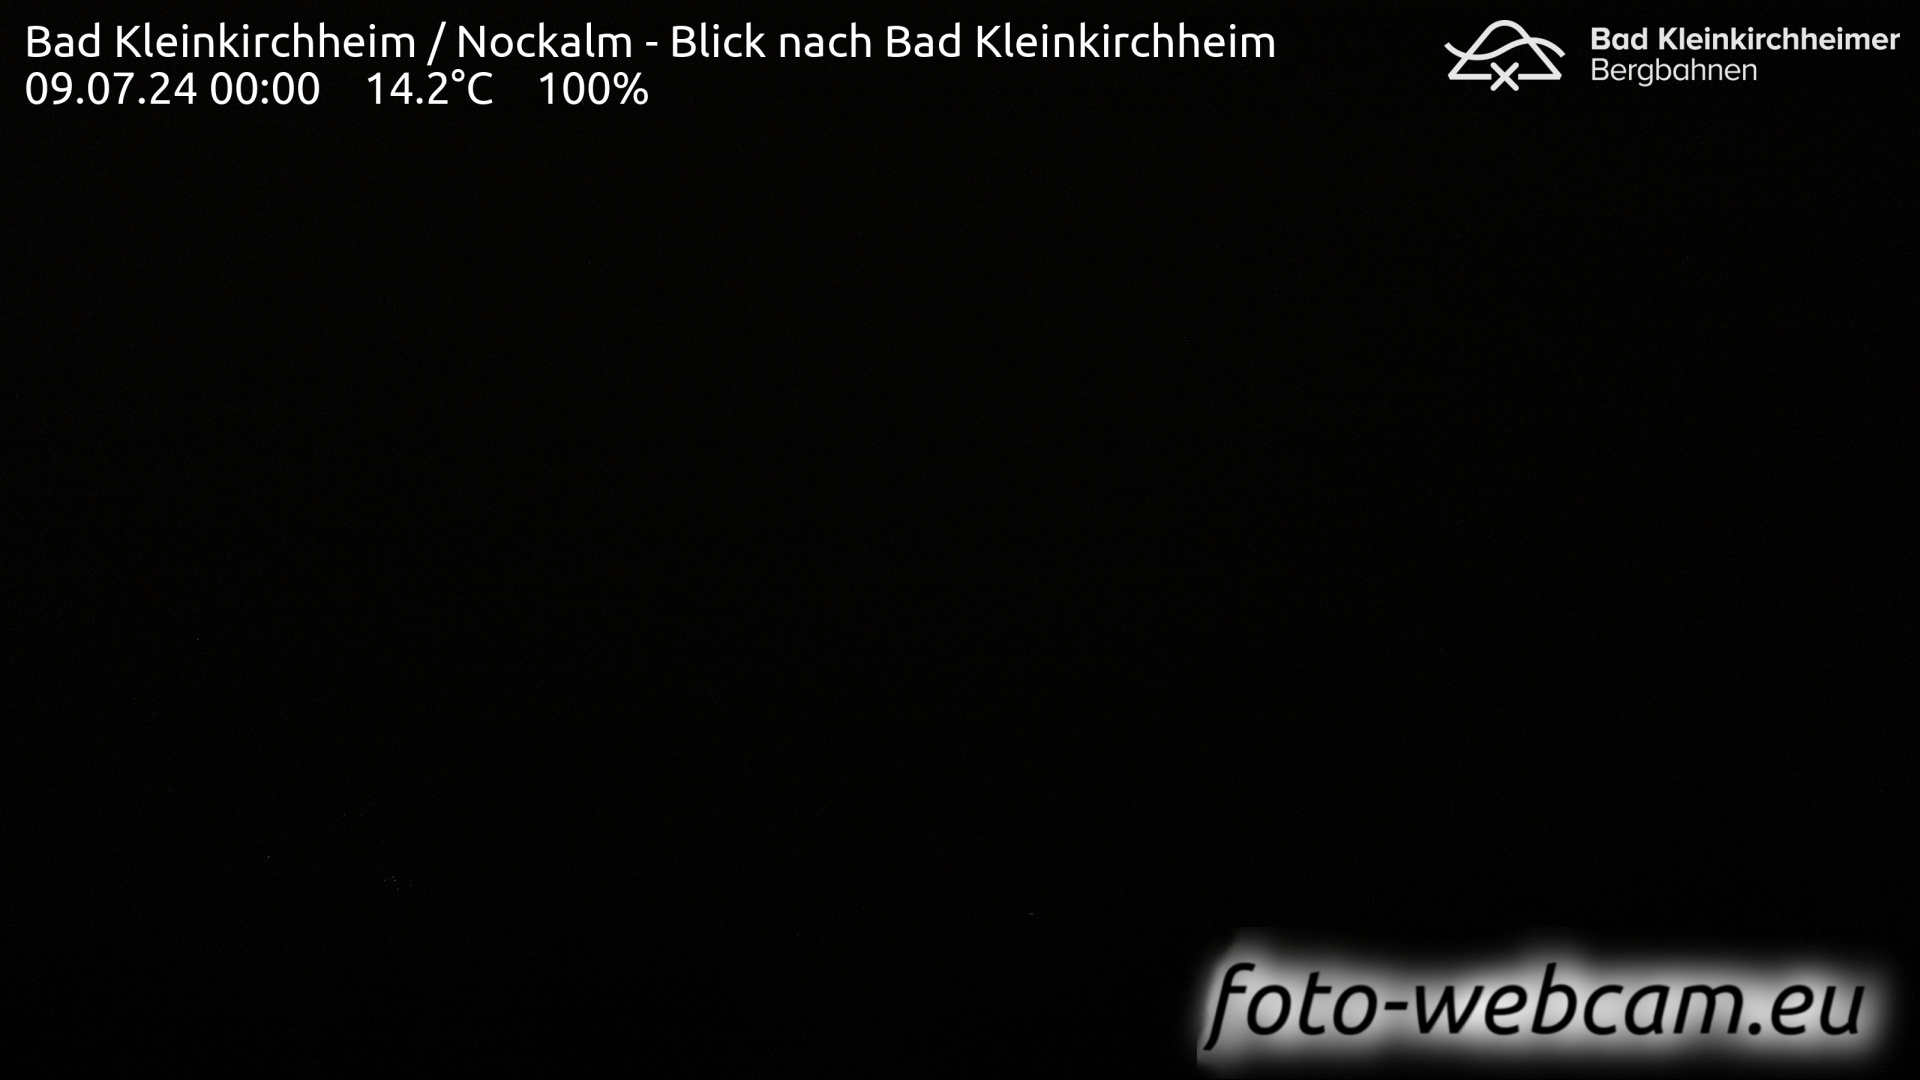 Bad Kleinkirchheim Man. 00:17